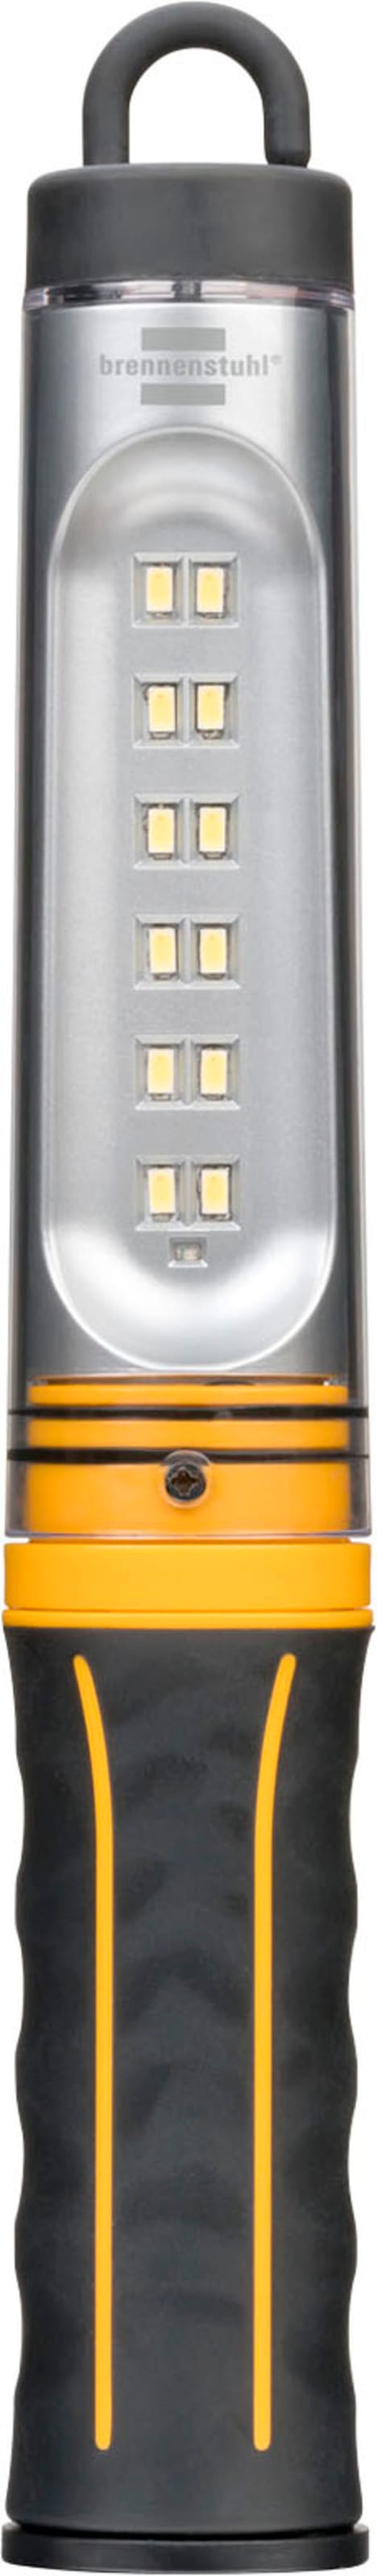 Handleuchte »WL 500 A«, mit integriertem Akku und USB-Kabel